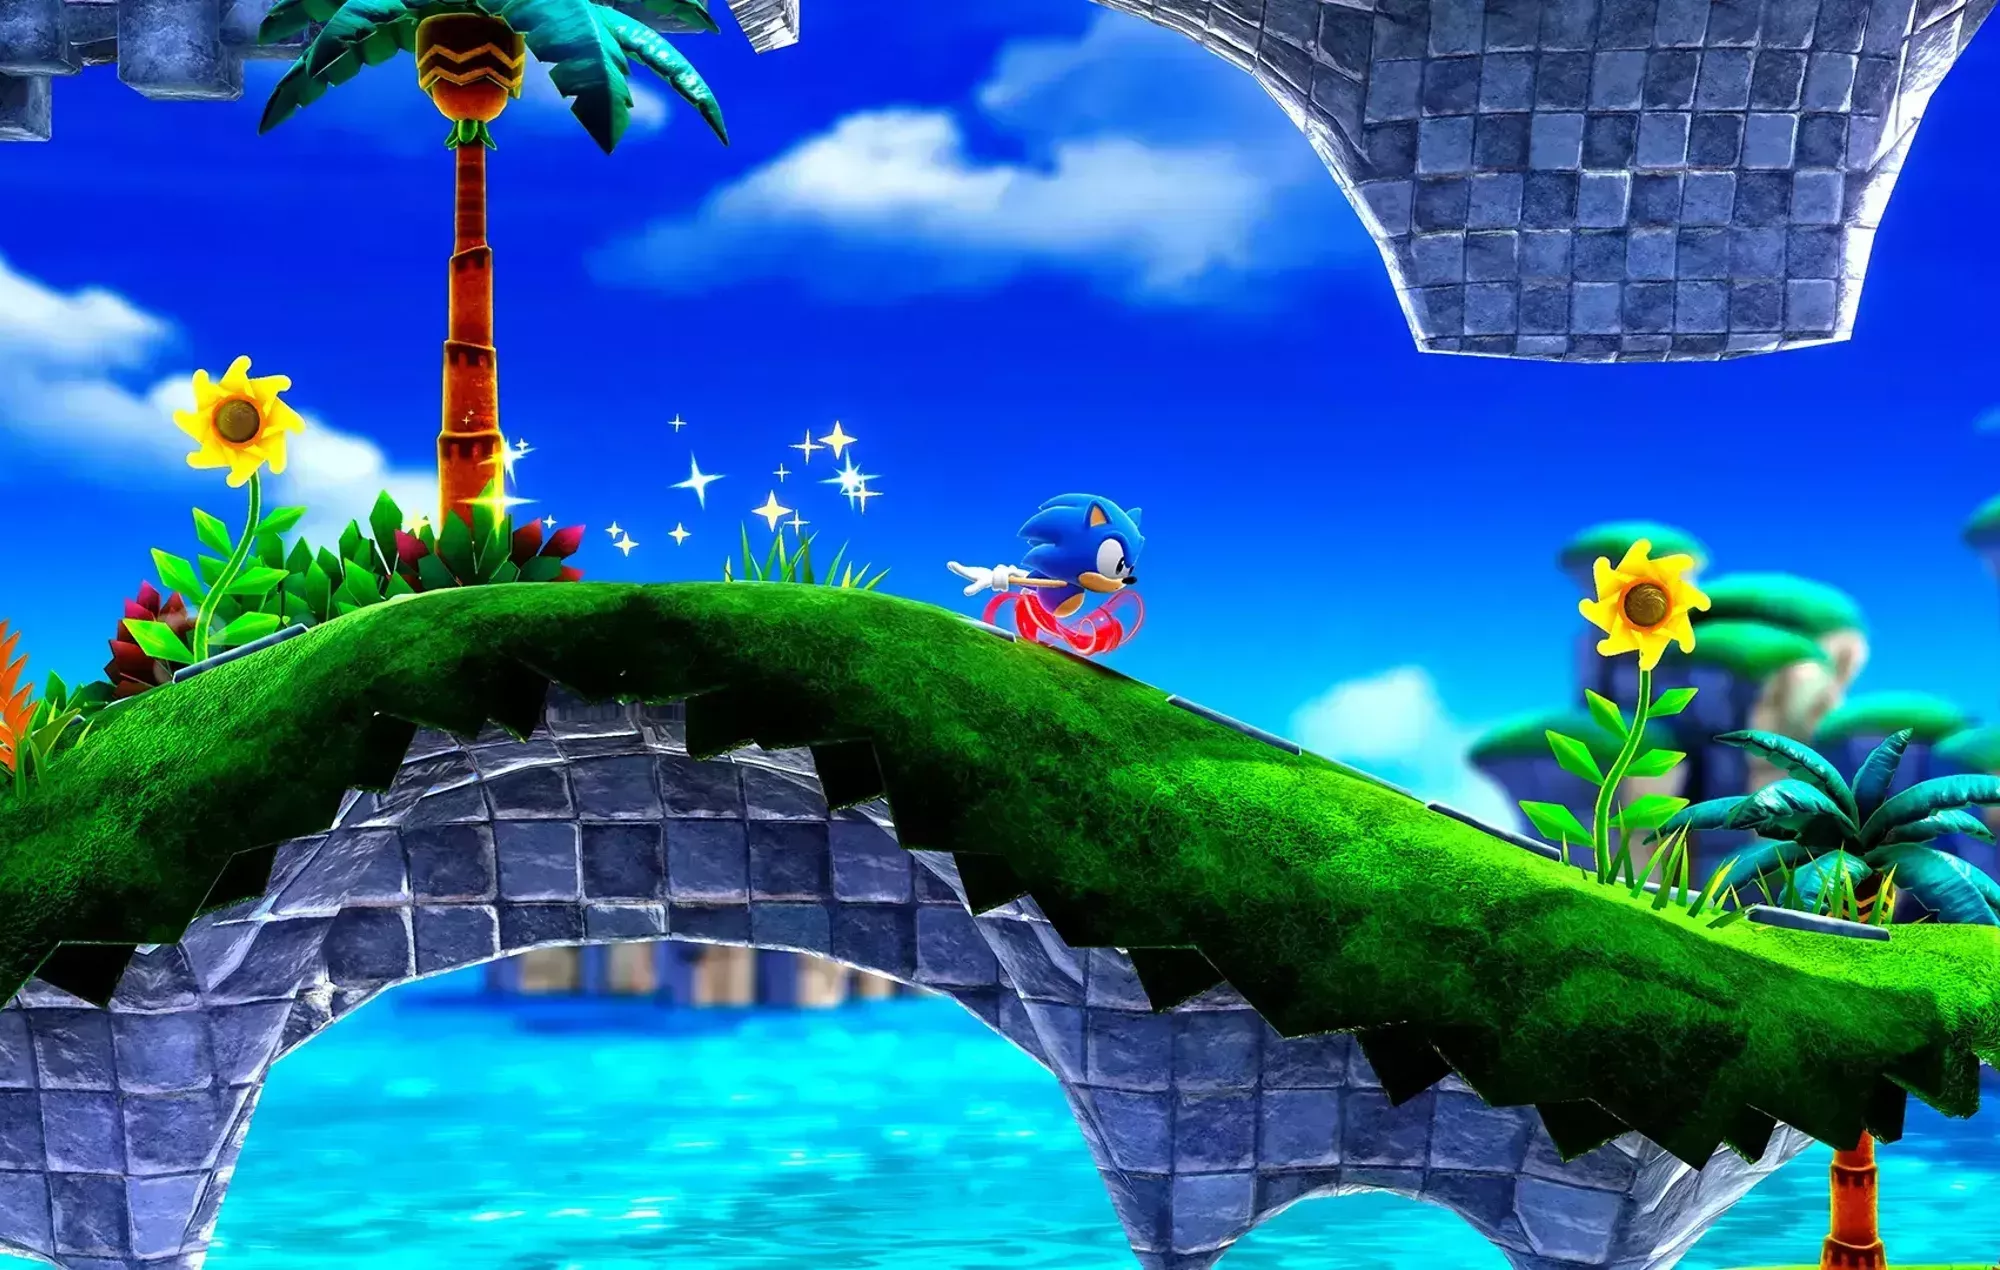 Echa un vistazo al tráiler de presentación de Sonic Superstars, el próximo juego de plataformas en 2D de Sega.